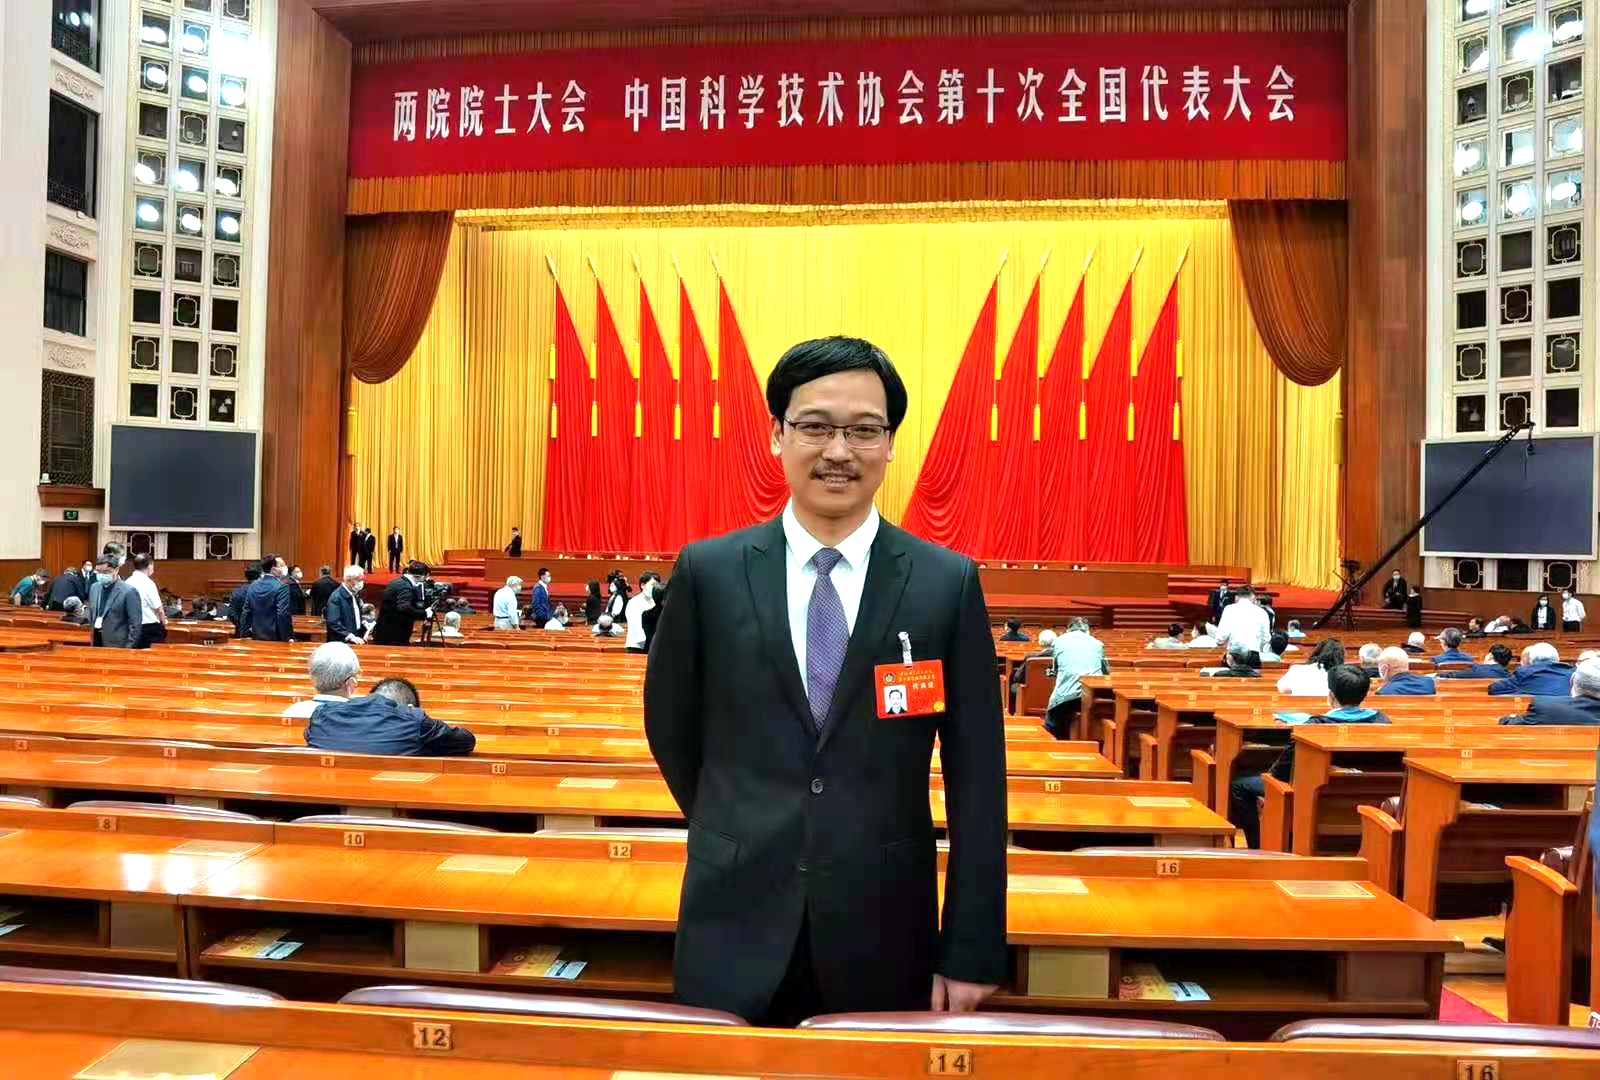 百助CEO程磊参加中国科学技术协会第十次全国代表大会